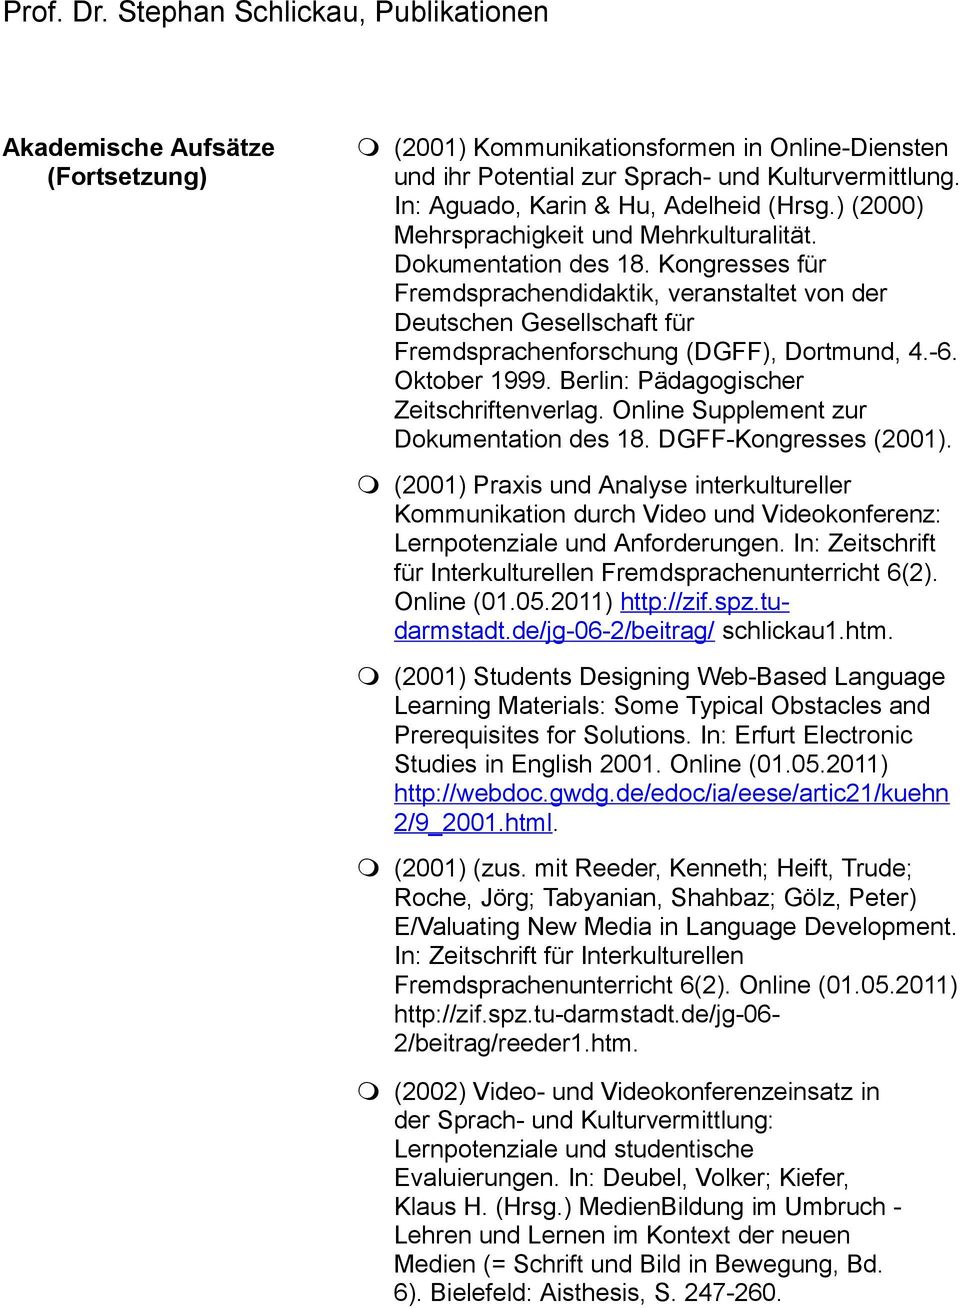 -6. Oktober 1999. Berlin: Pädagogischer Zeitschriftenverlag. Online Supplement zur Dokumentation des 18. DGFF-Kongresses (2001).